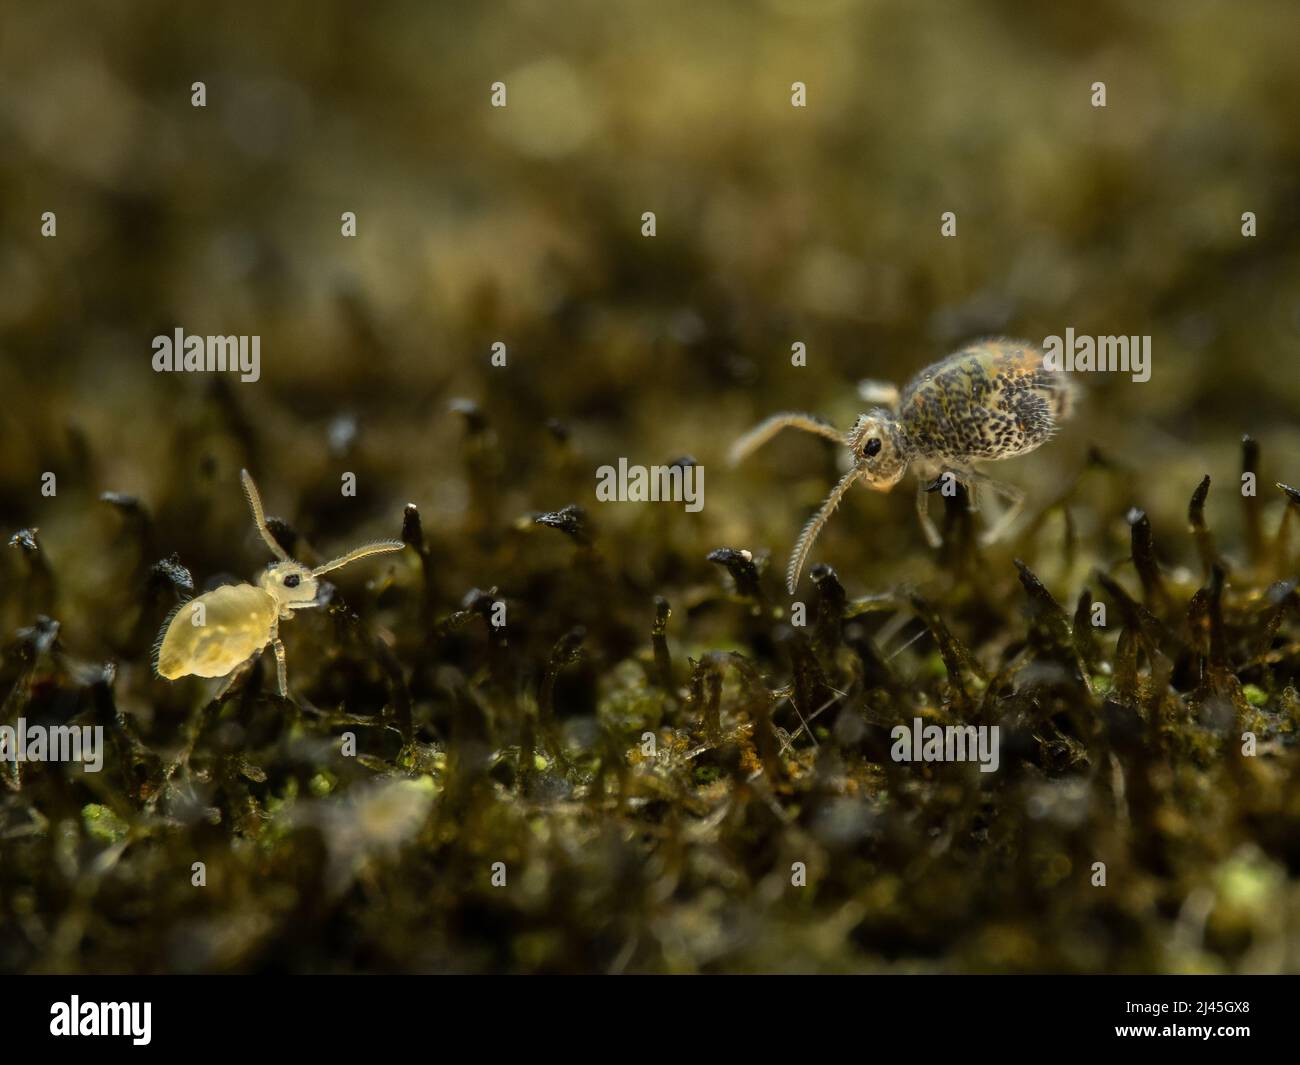 Deux queues de printemps globulaire - Sminthuridae, Collembola - se rencontrent sur un lichen sur un fencepost au Royaume-Uni Banque D'Images